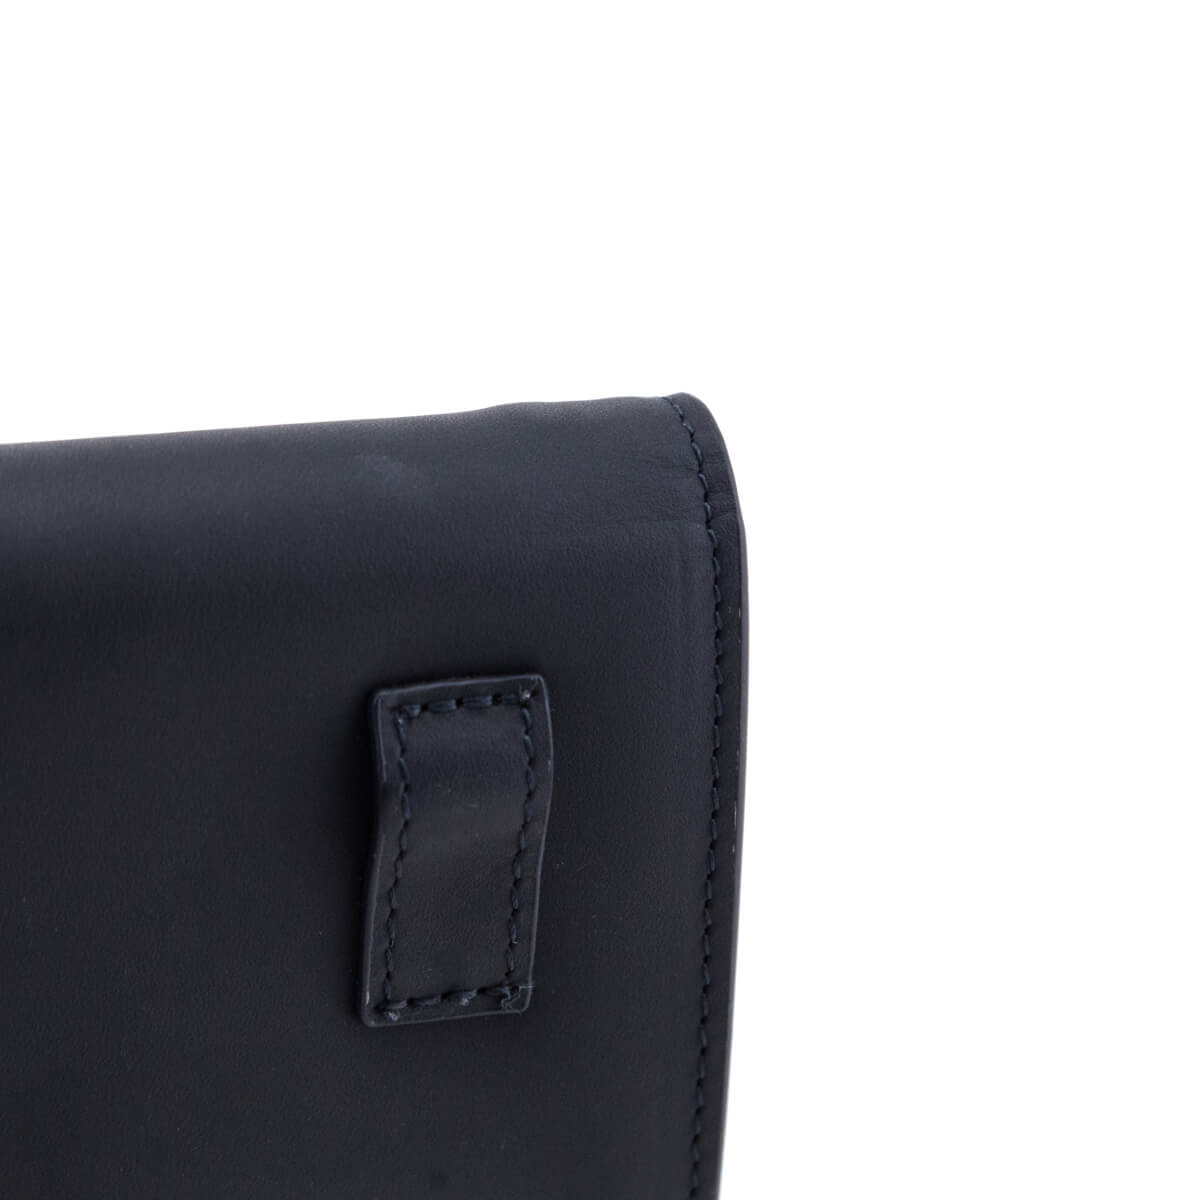 Christian Dior Ultra Matte Nano Saddle Chain Pouch - Black Waist Bags,  Handbags - CHR303414